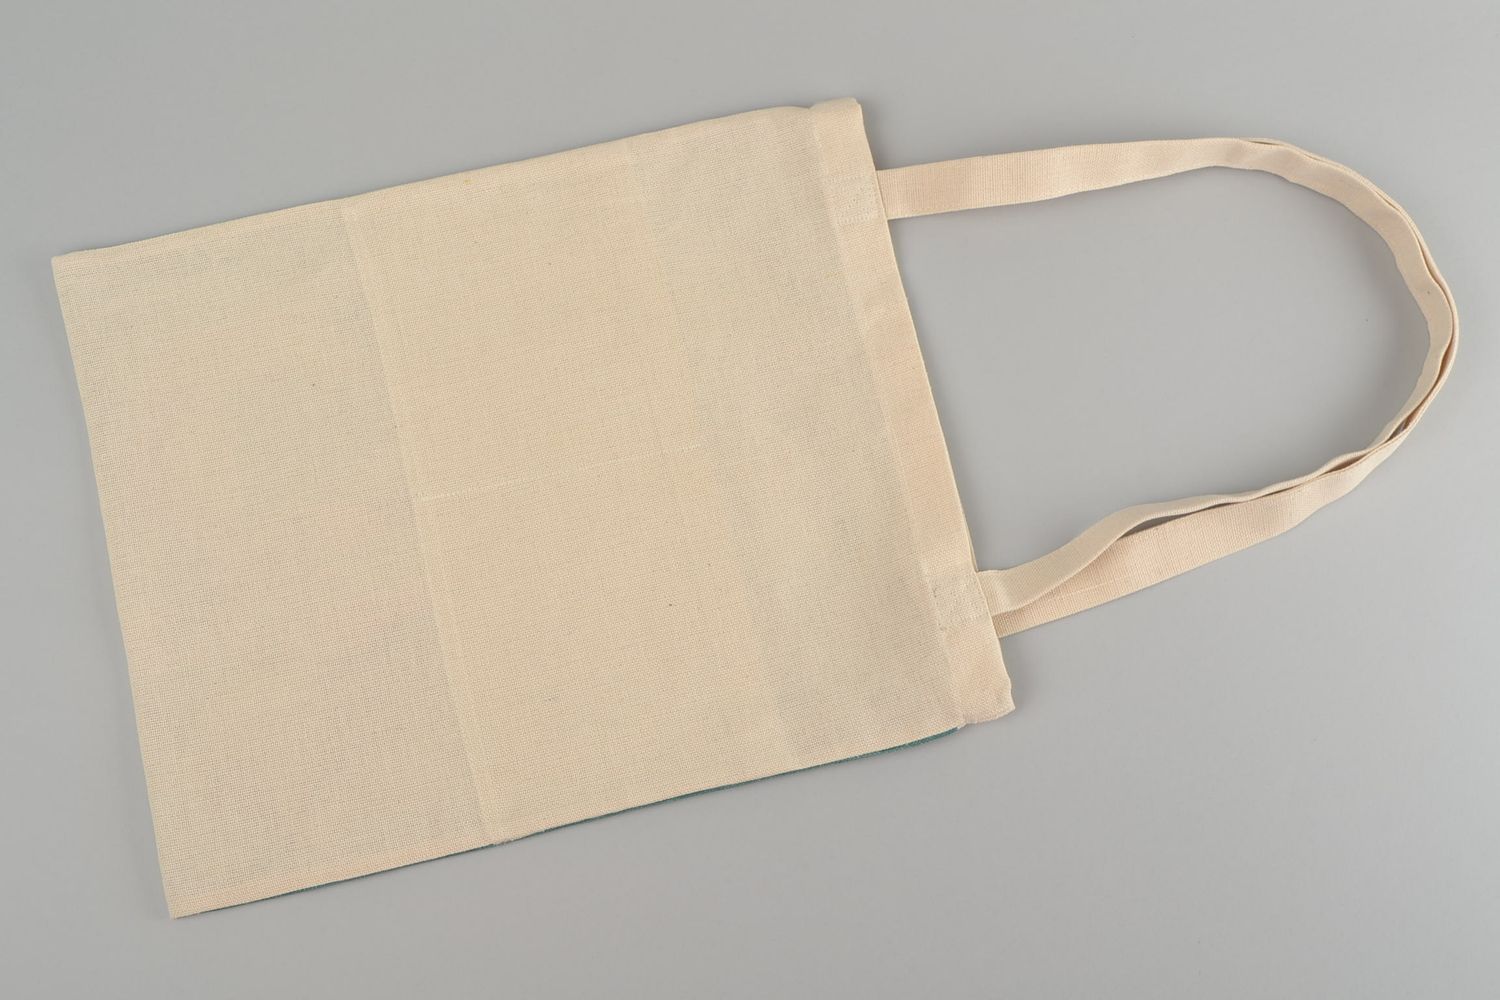 Женская сумка из ткани с принтом ручной работы авторская красивая в эко стиле фото 4